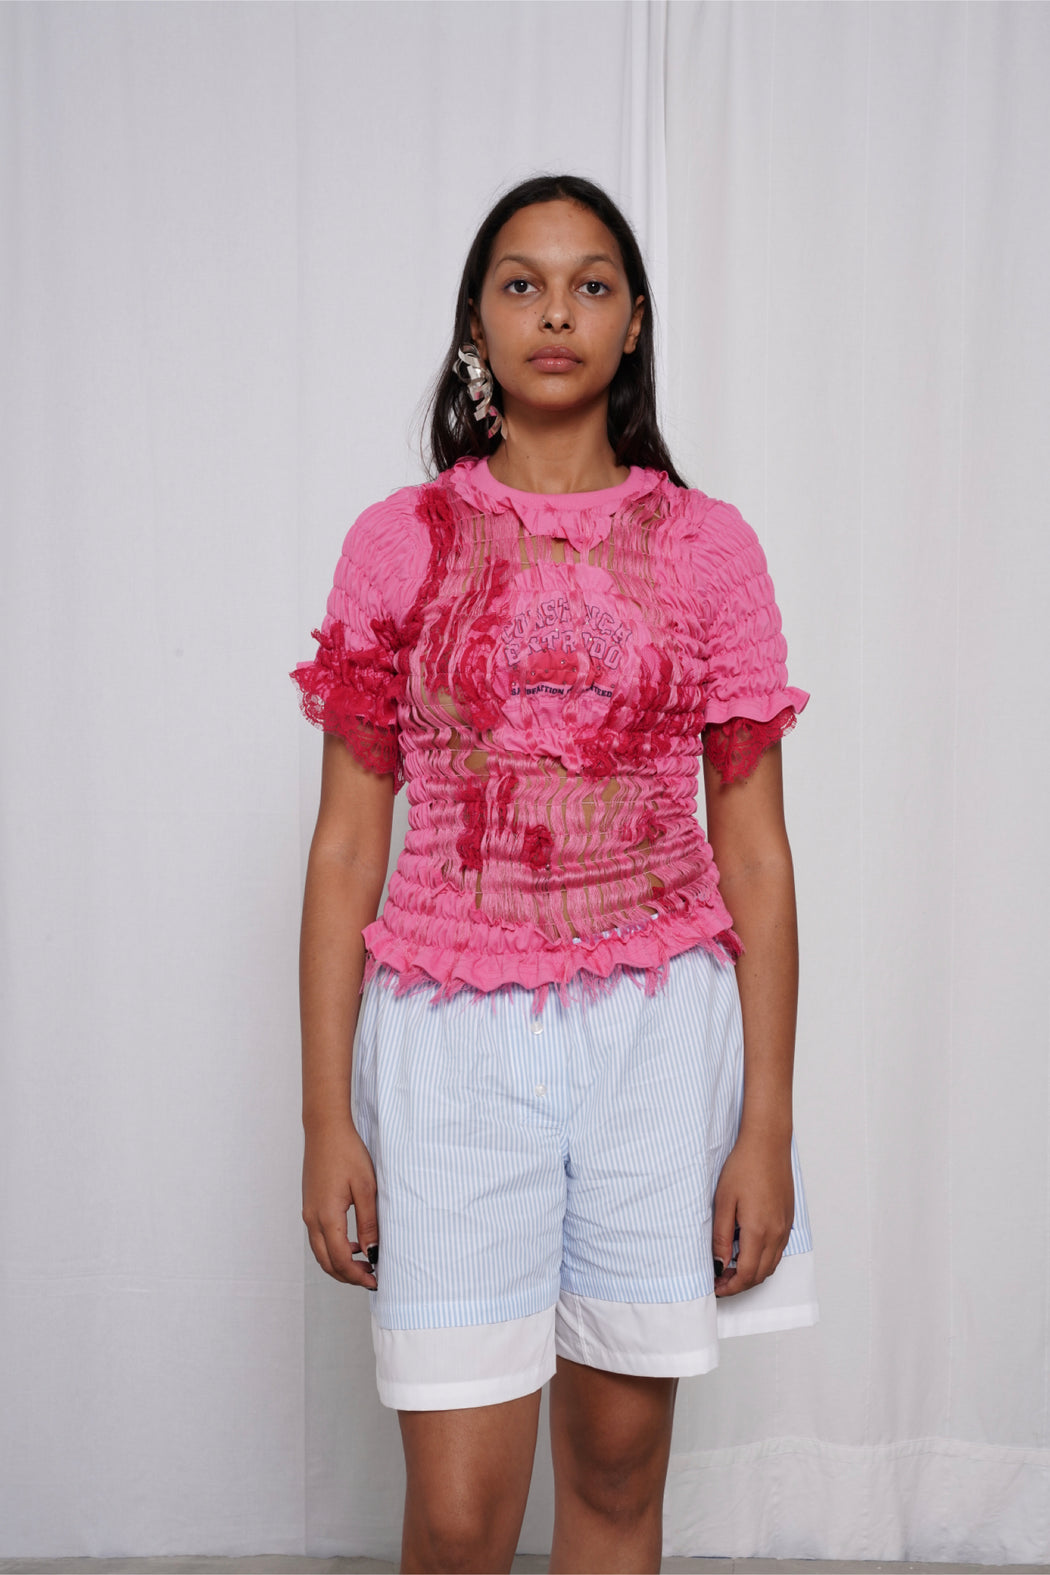 Pink Unwoven Deconstructed T-Shirt